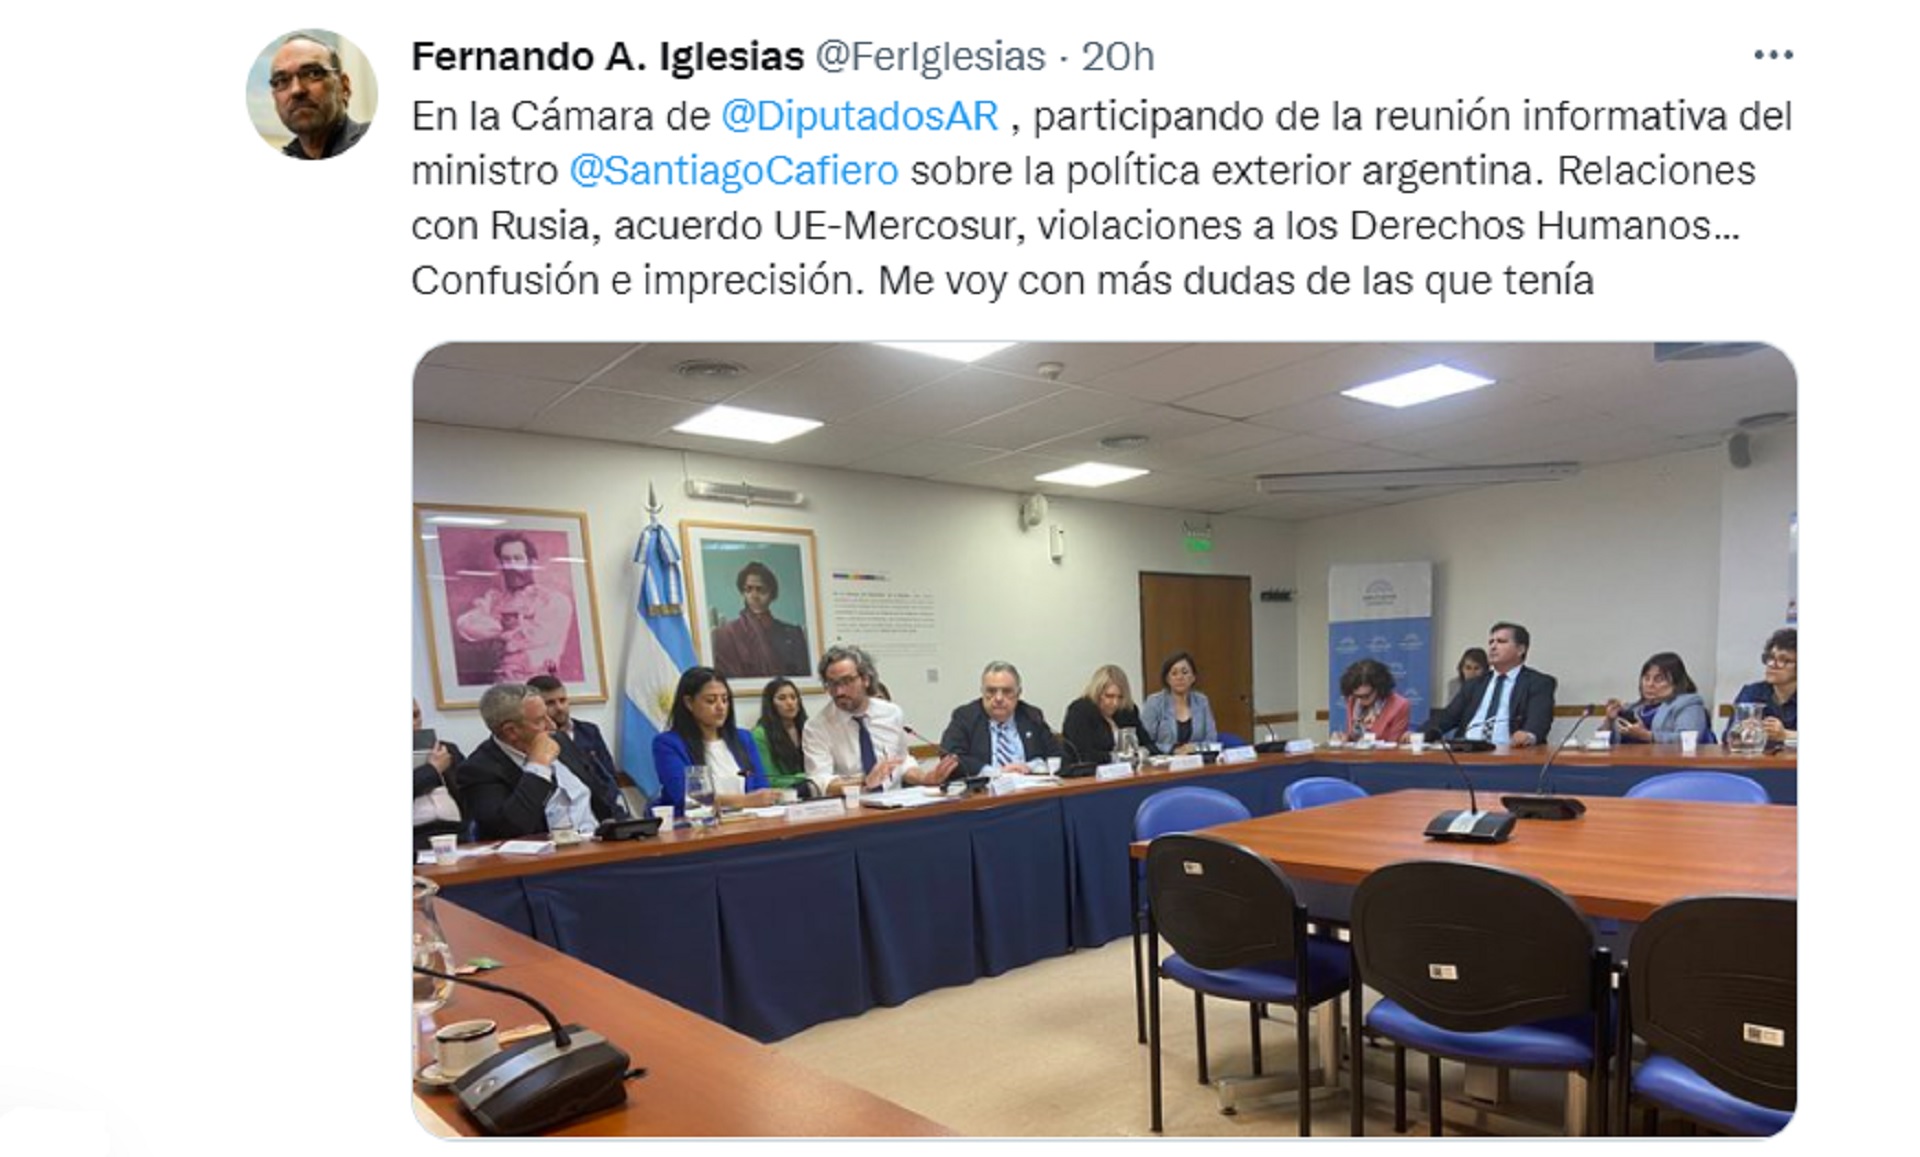 La publicación de Fernando Iglesias con críticas al Canciller